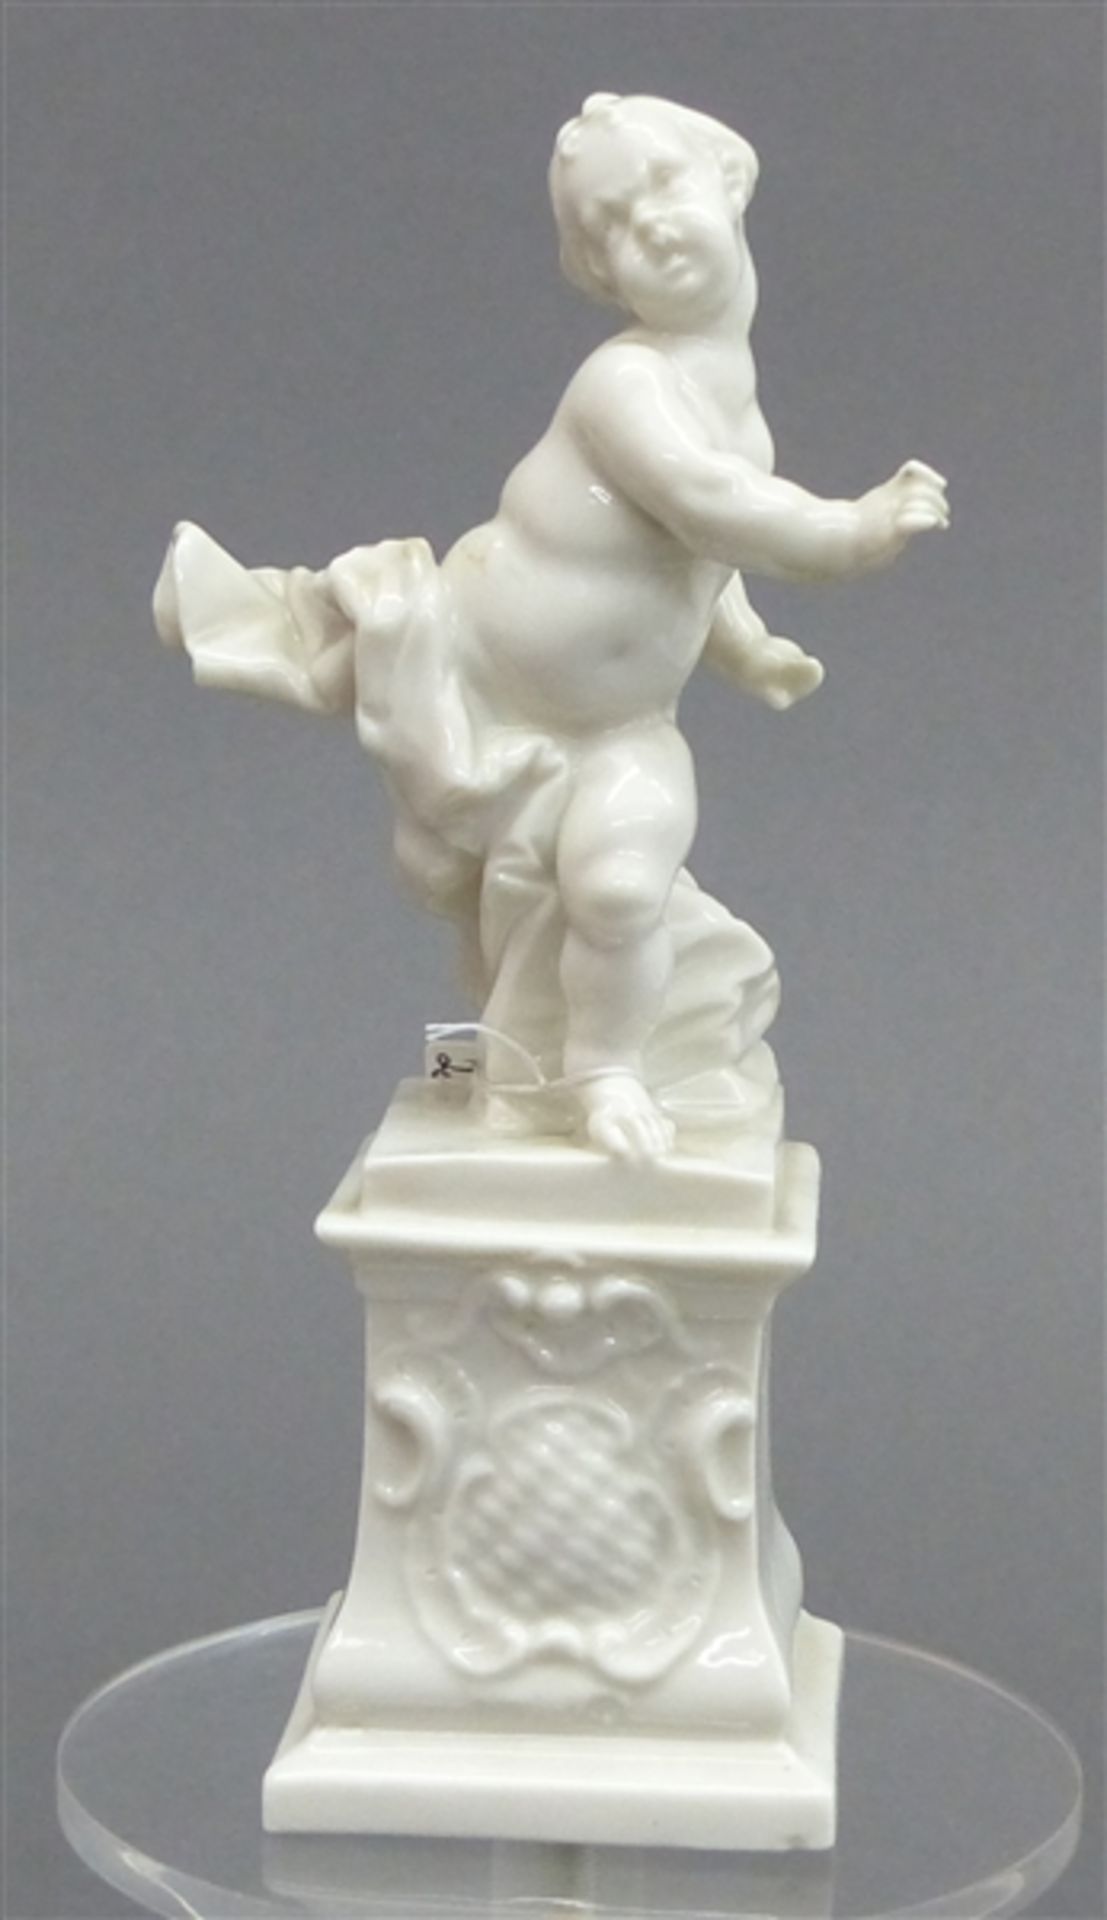 Porzellanskulpturweiß, stehender Putto auf Sockel, mit reliefiertem Wappenschild, Bustelli-